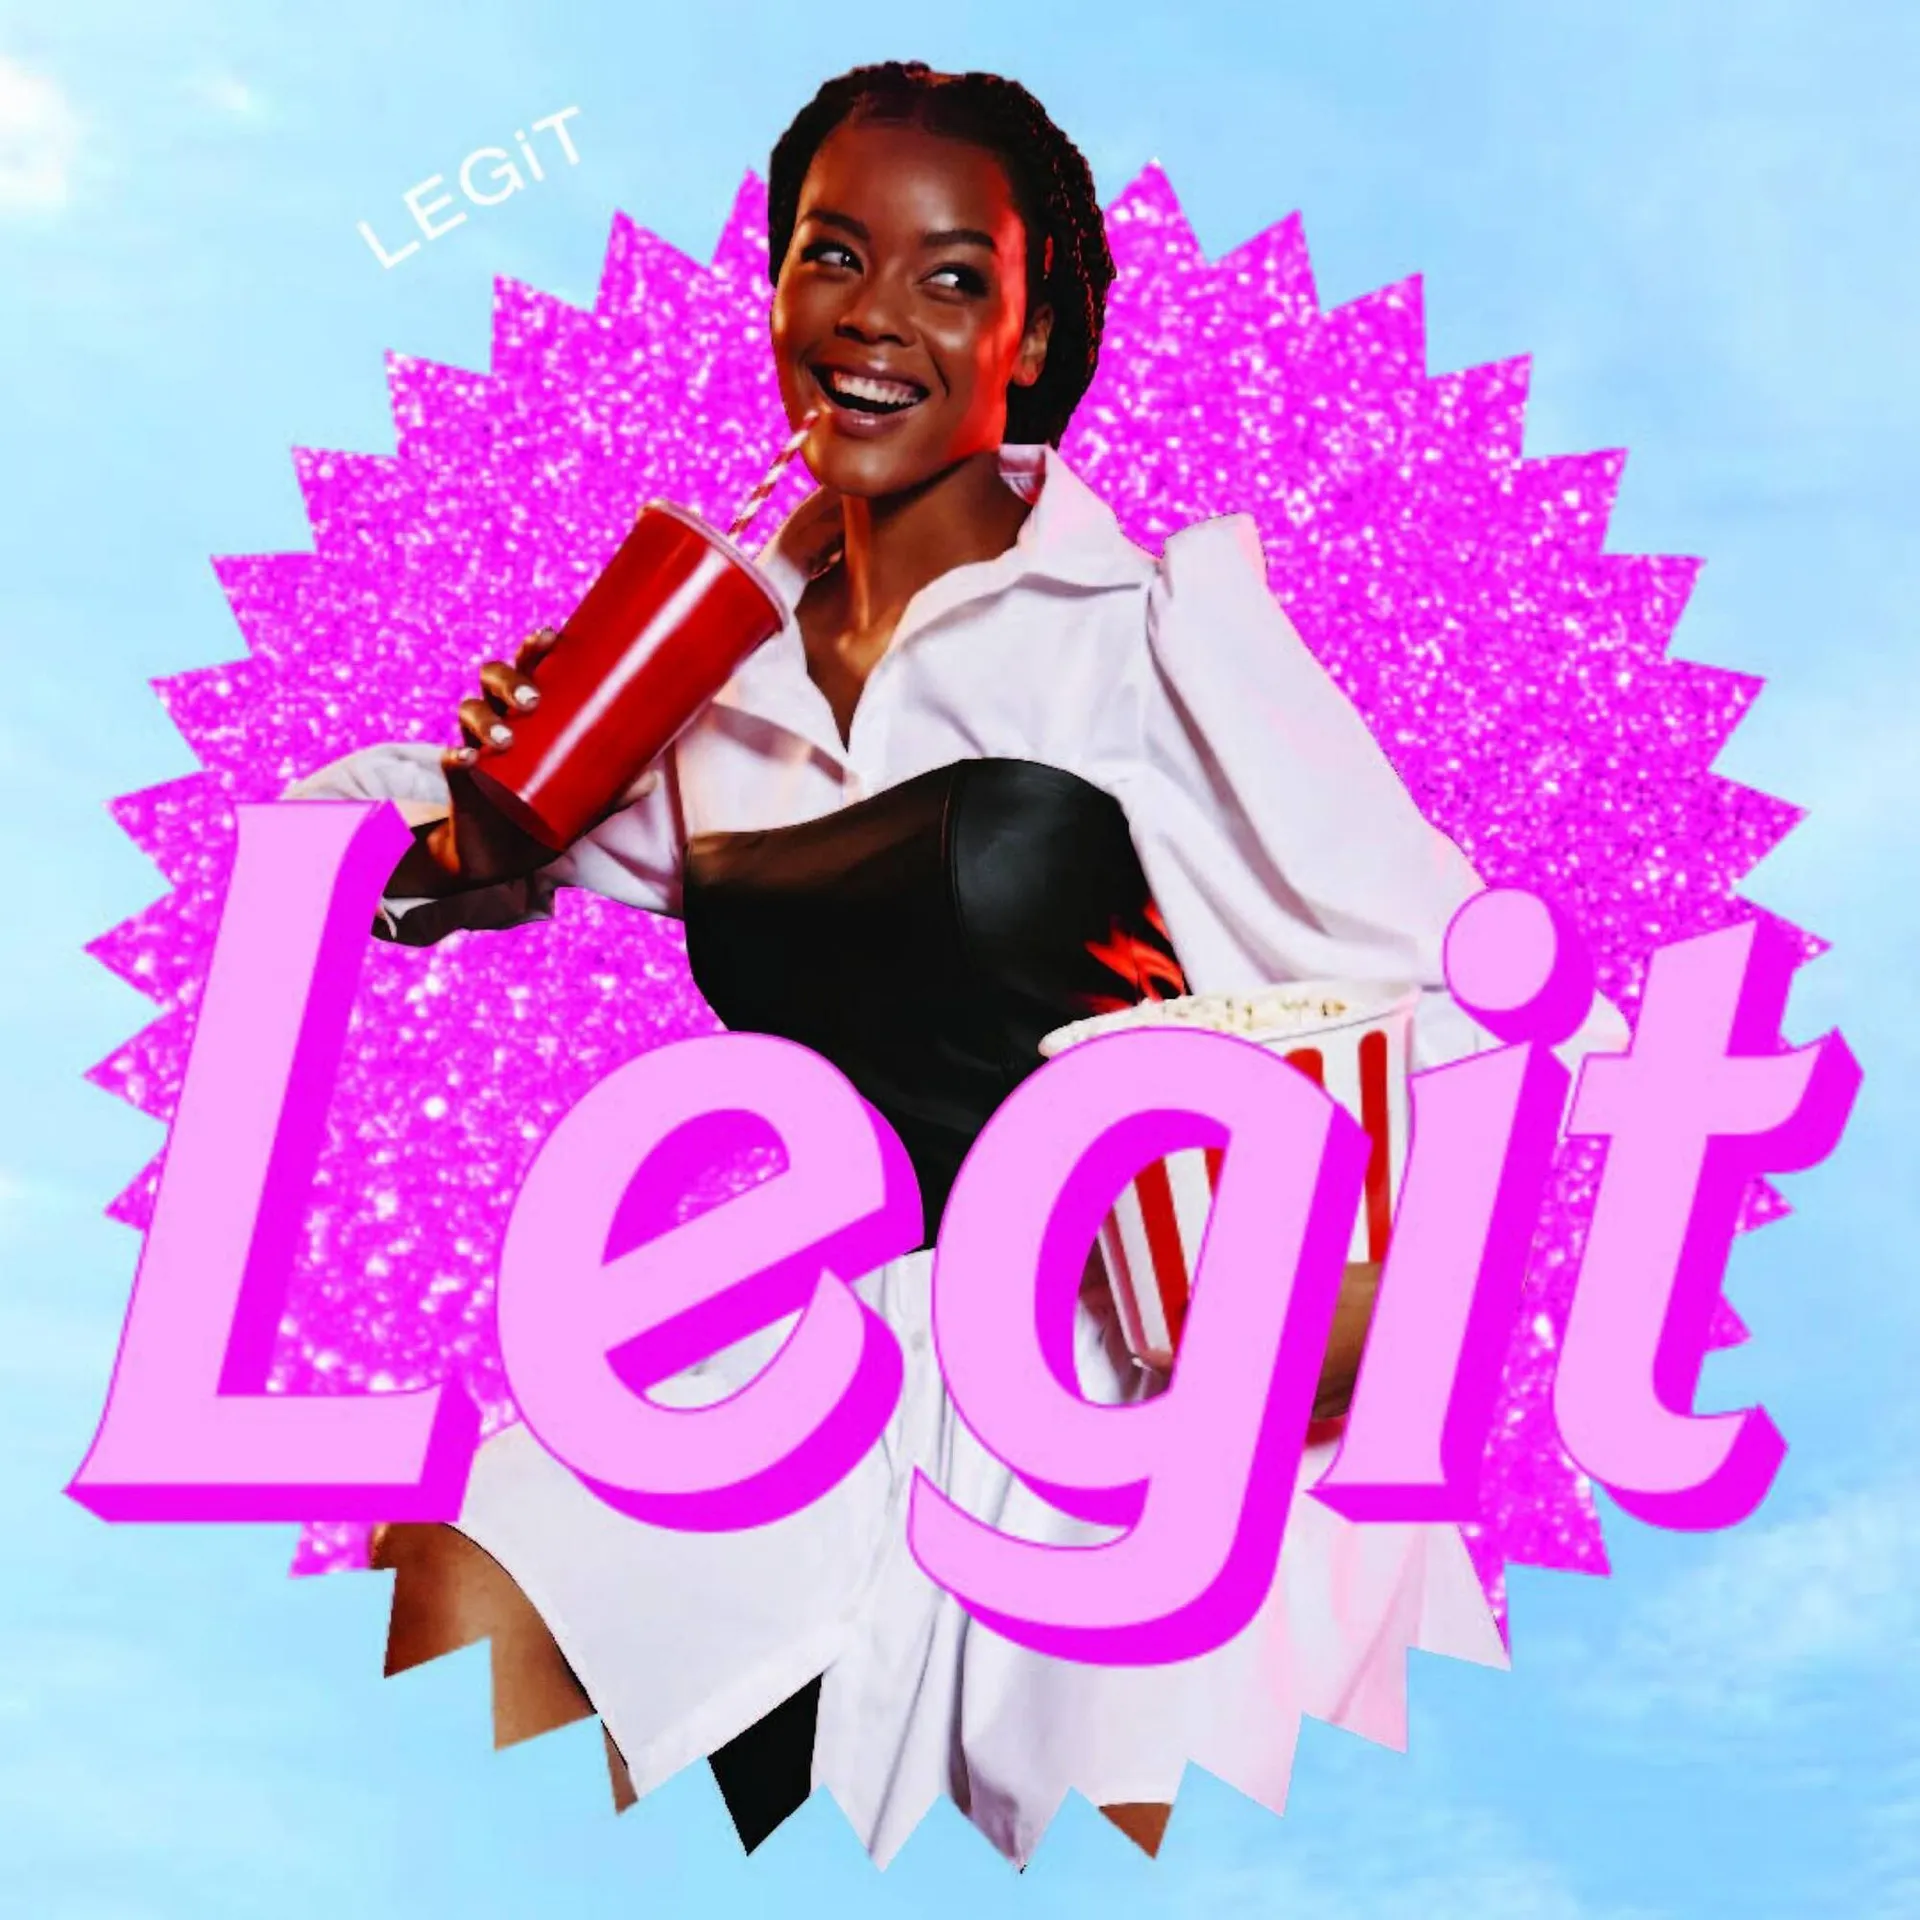 LEGiT catalogue - 1